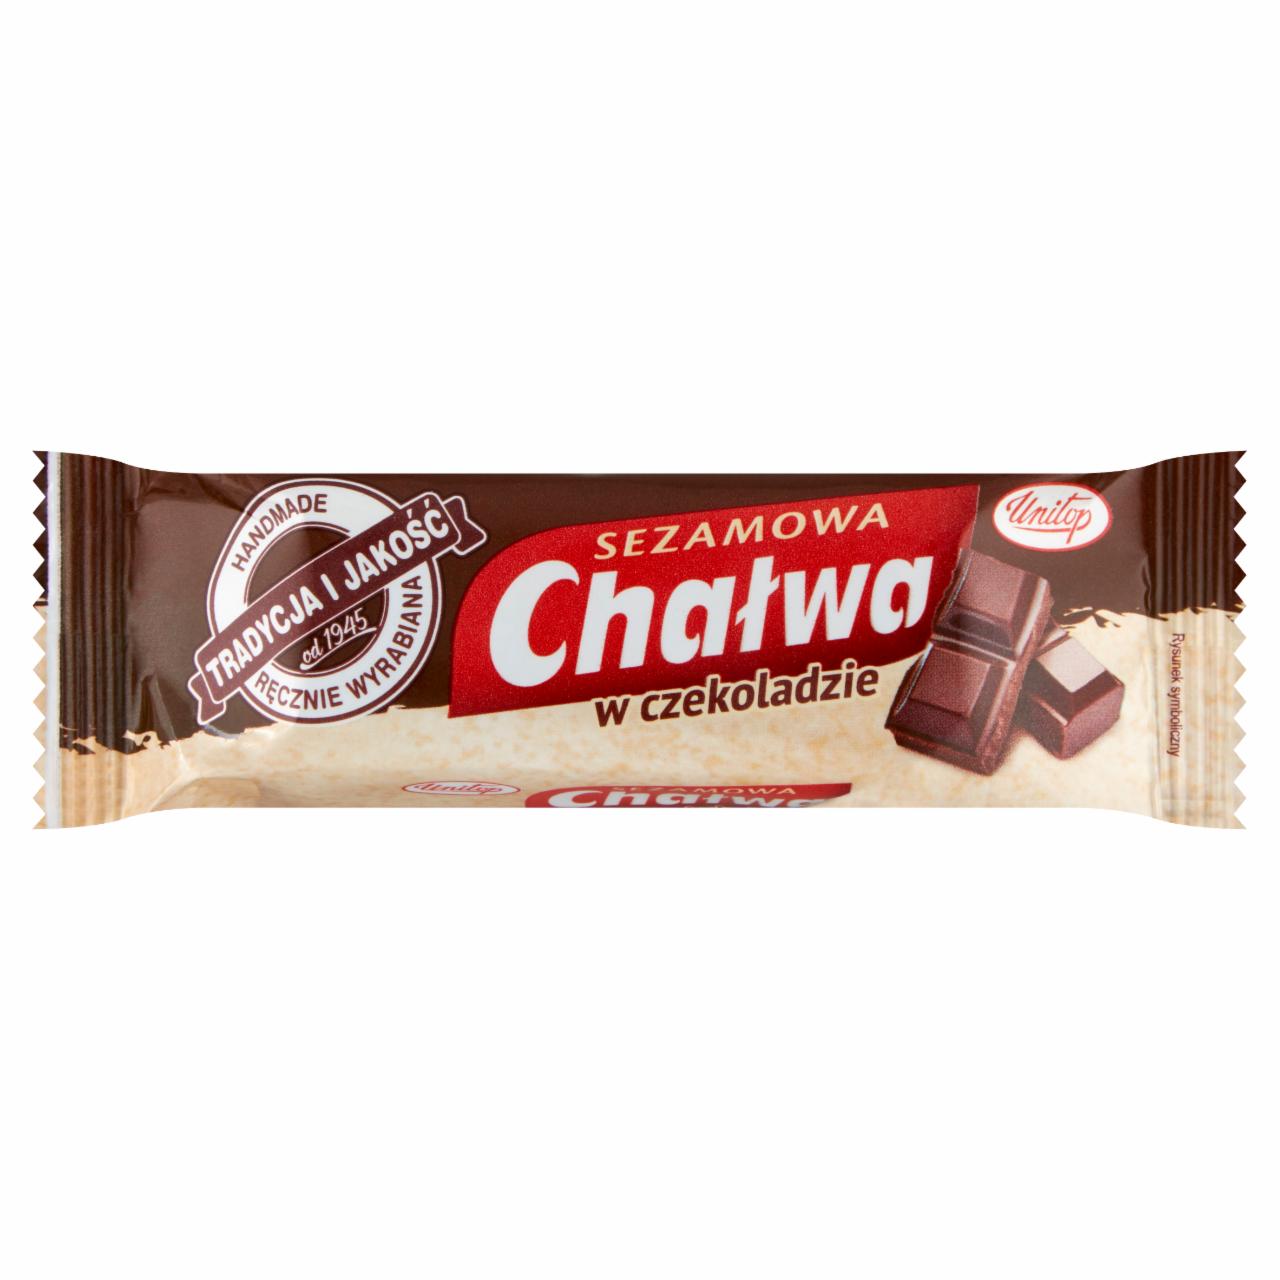 Zdjęcia - Unitop Chałwa sezamowa w czekoladzie 50 g